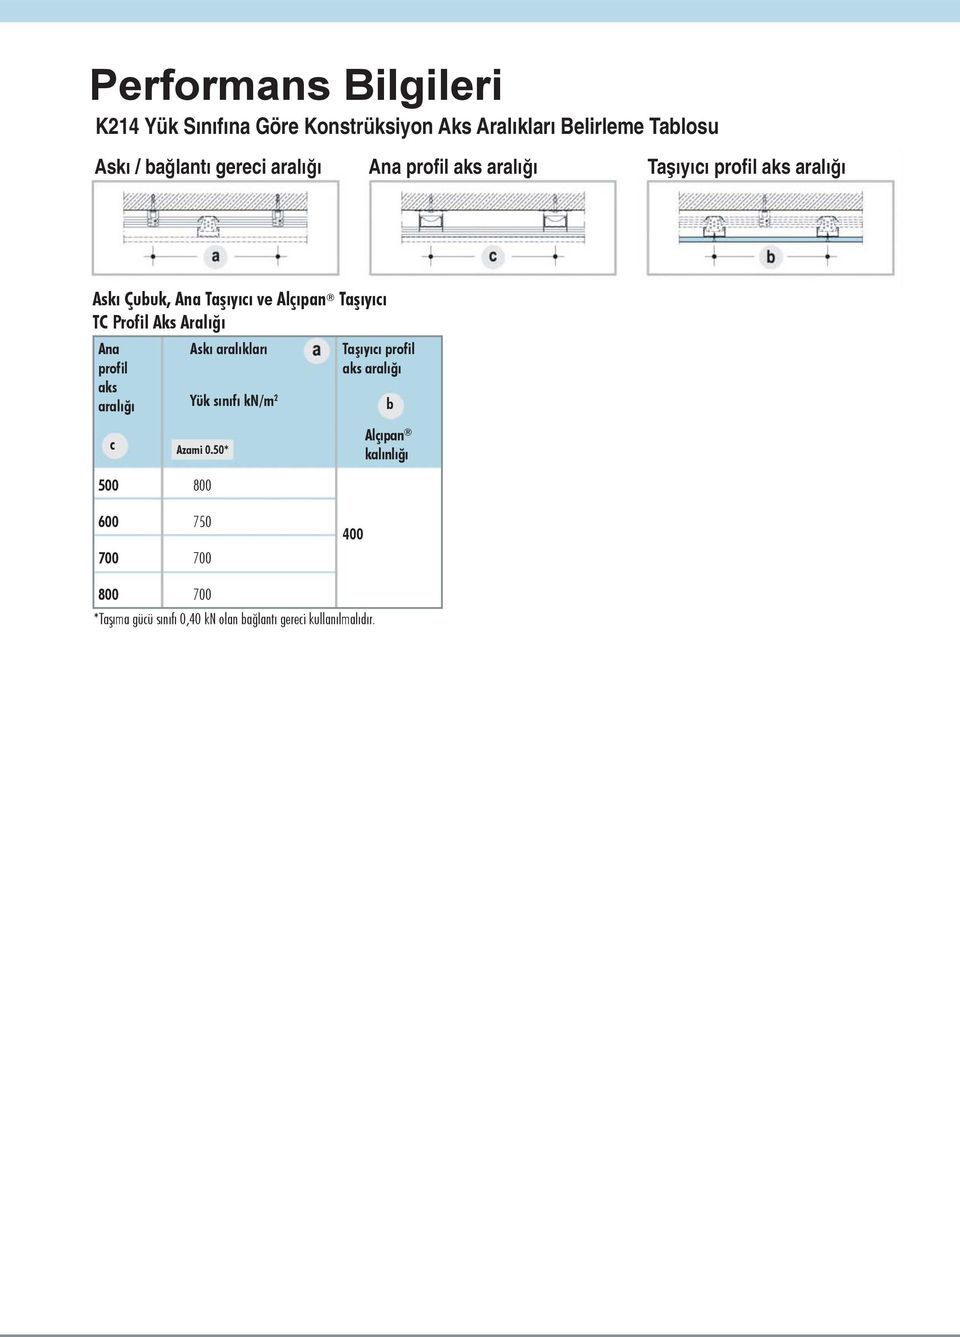 Aralığı Ana profil aks aralığı Askı aralıkları Yük sınıfı kn/m 2 Taşıyıcı profil aks aralığı b c 500 600 700